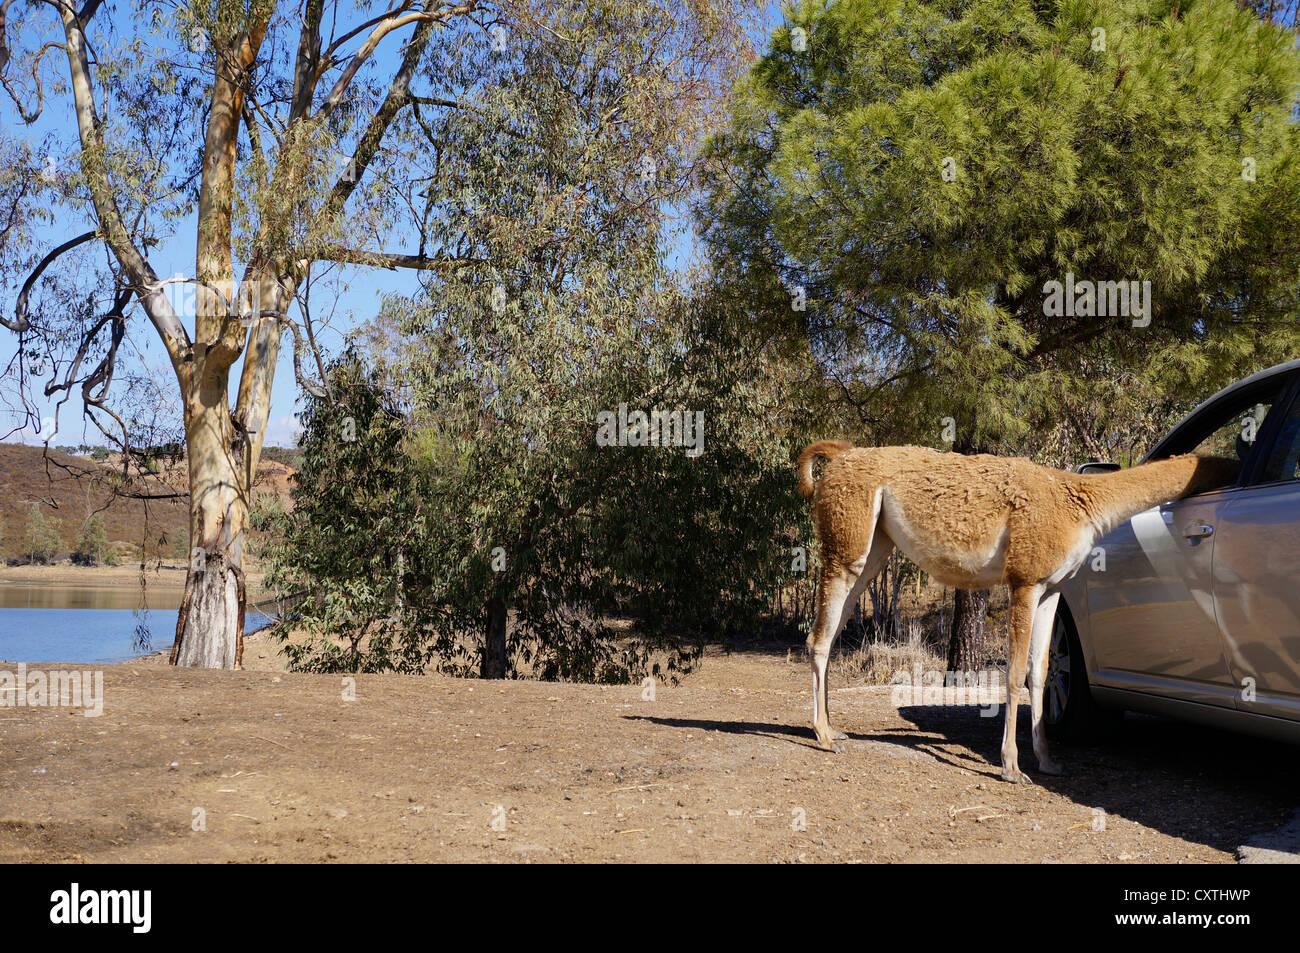 Les touristes en safari à partir de l'alimentation de la voiture, Guanaco (Lama guanicoe) debout sur le terrain, curieux, à la Reserva, le parc safari Banque D'Images